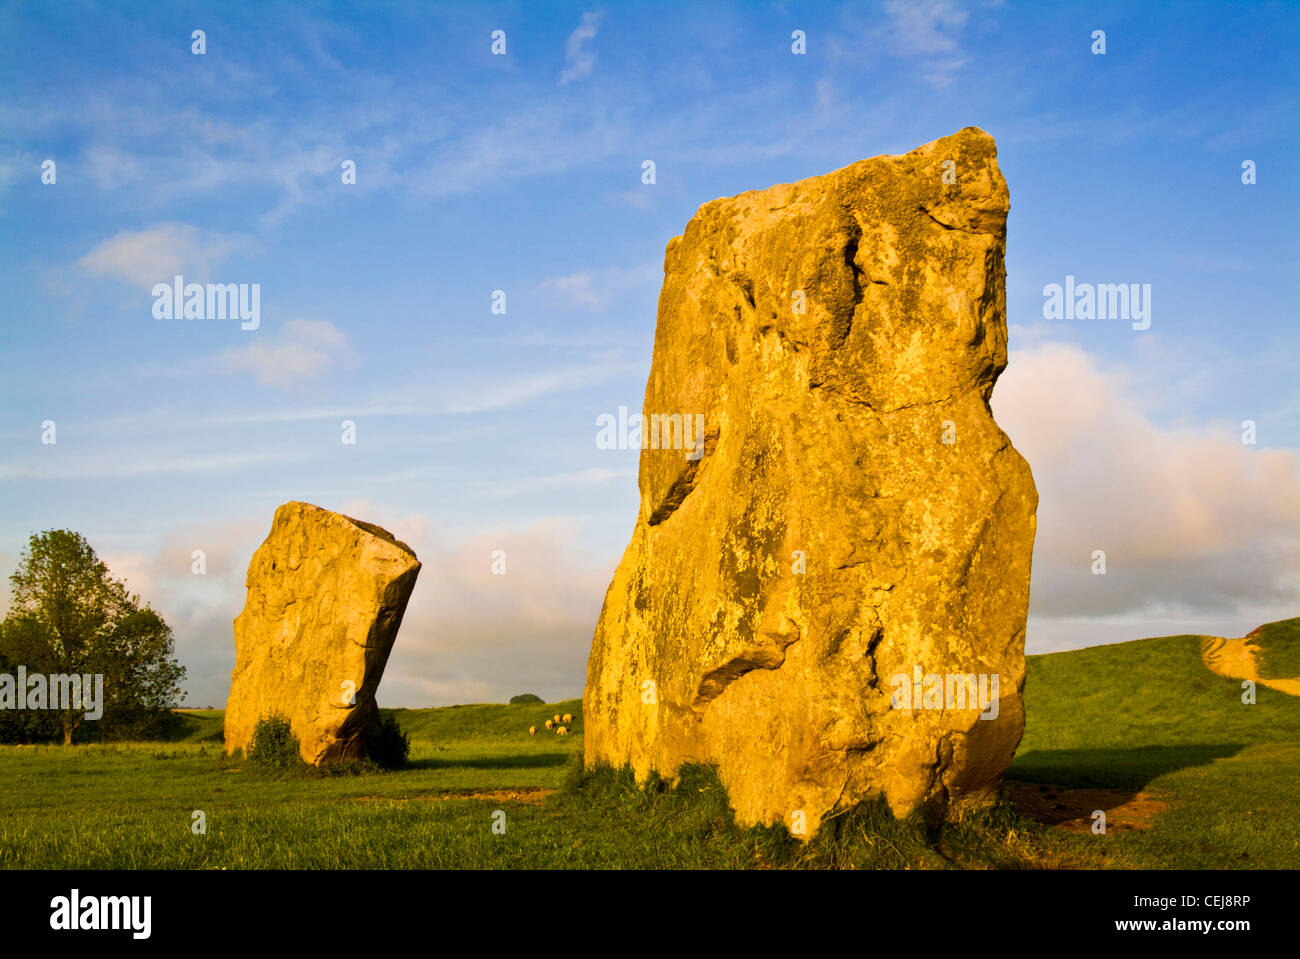 Grande pierre monolithes de monument d'Avebury dans le Wiltshire un site du patrimoine mondial Wessex Angleterre UK GO Europe Banque D'Images